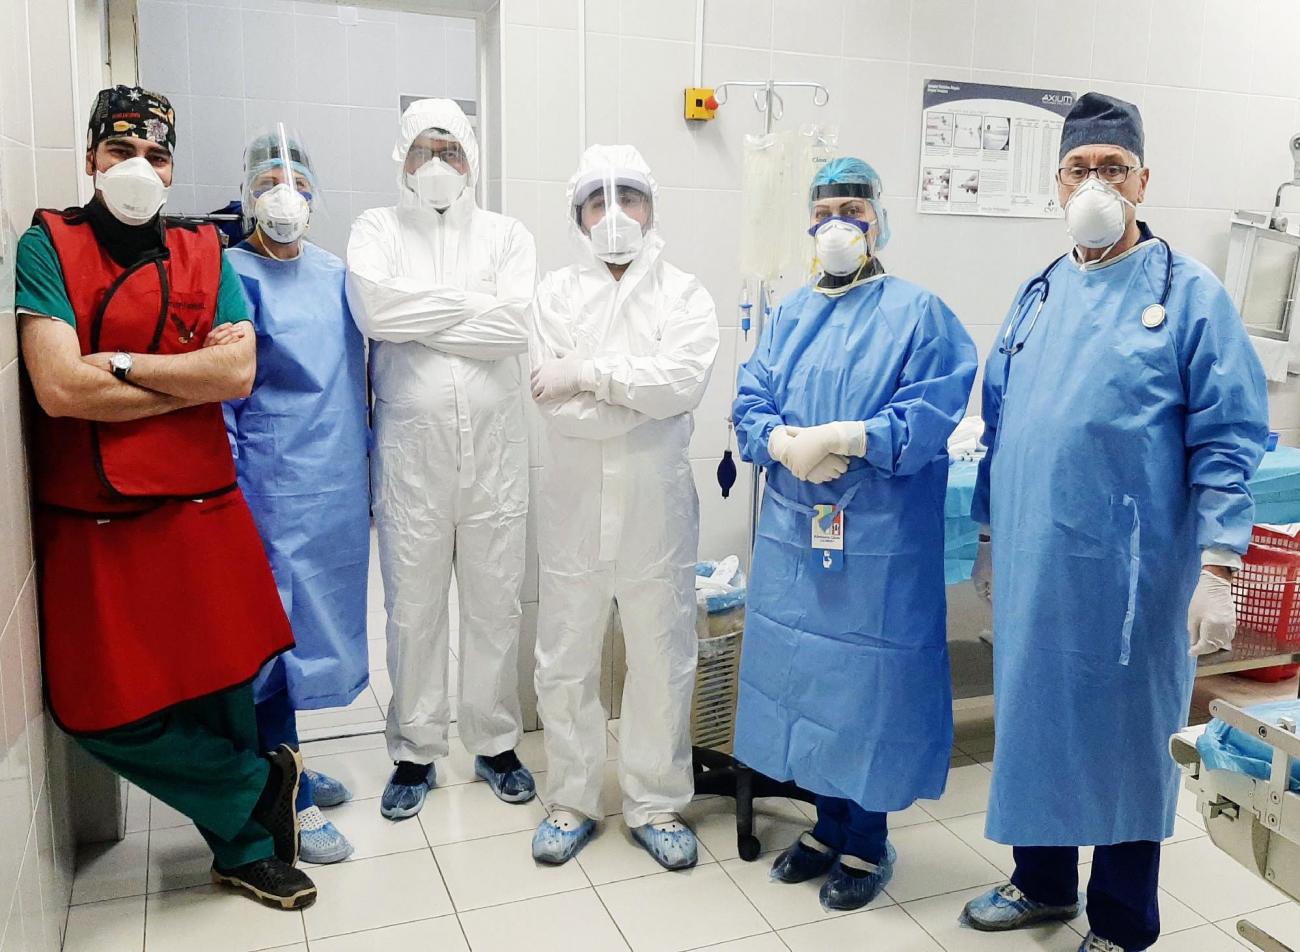 Երևանում բժիշկները շուրջ 3 ժամ բարդ վիրահատություն են իրականացրել և փրկել են COVID-19-ով վարակված 49 ամյա քաղաքացու կյանքը